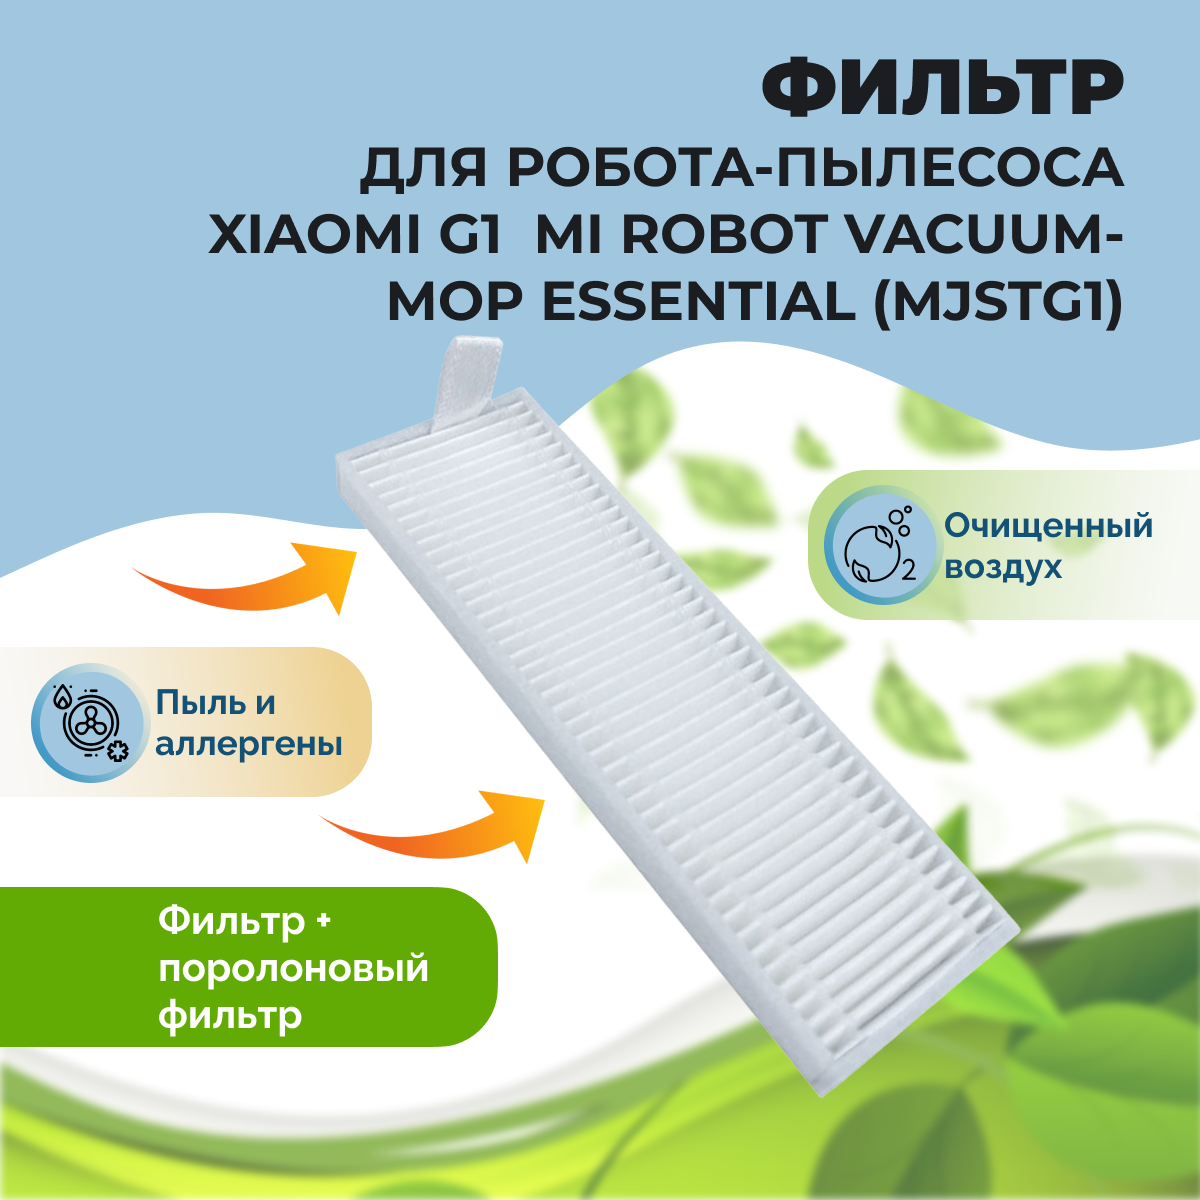 Фильтр для робота-пылесоса Xiaomi G1 Mi Robot Vacuum-Mop Essential (MJSTG1) 558131, фото 1